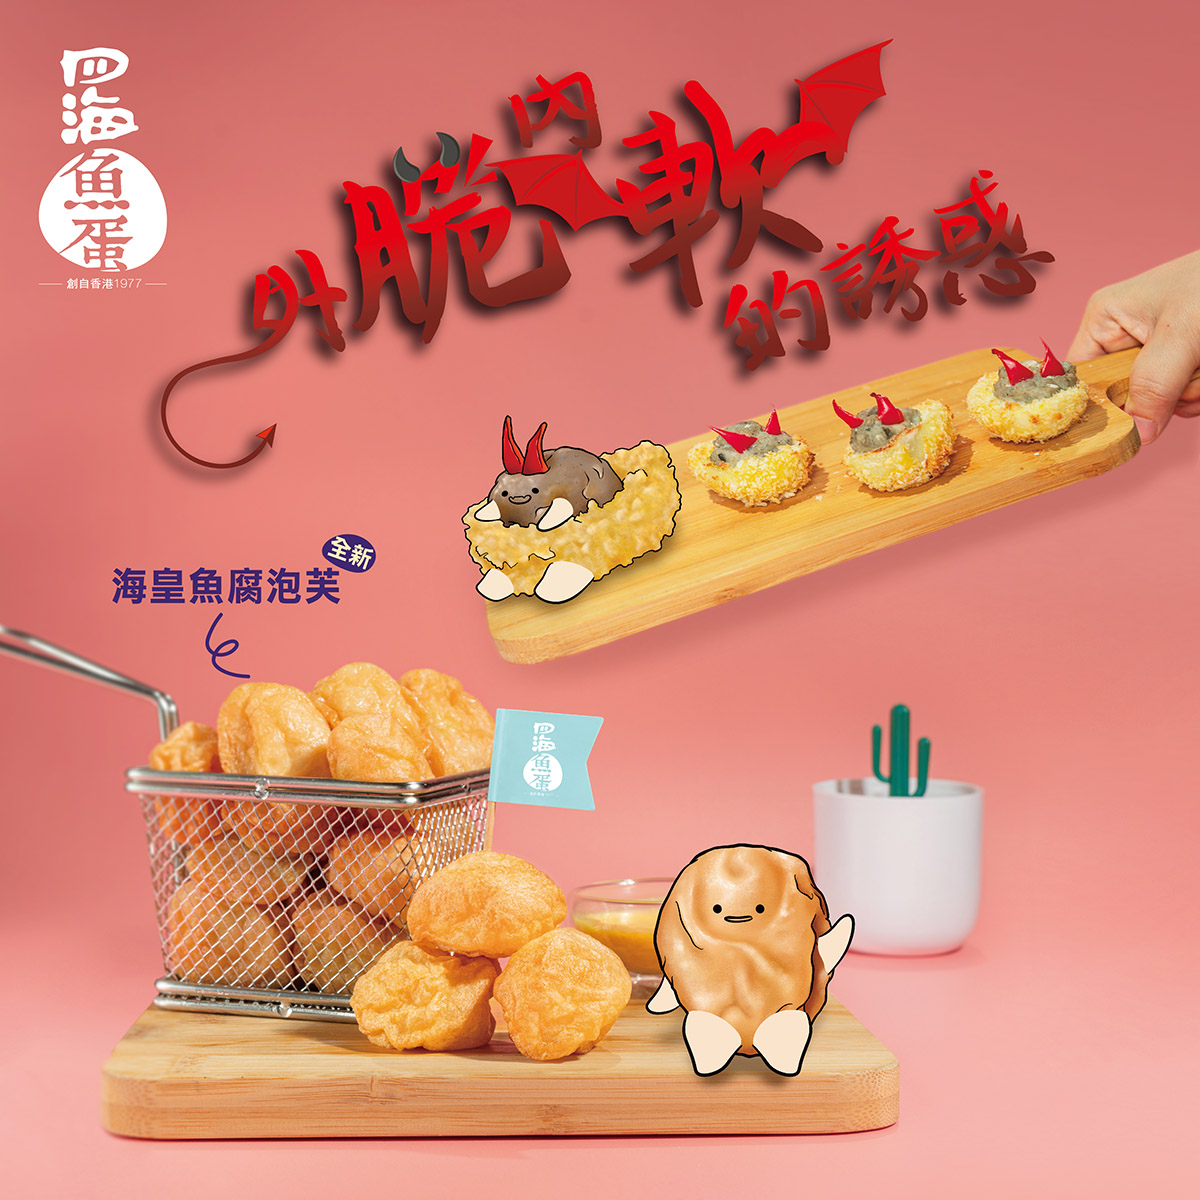 Four Seas Fish Block (Fish tofu) Series - New Release